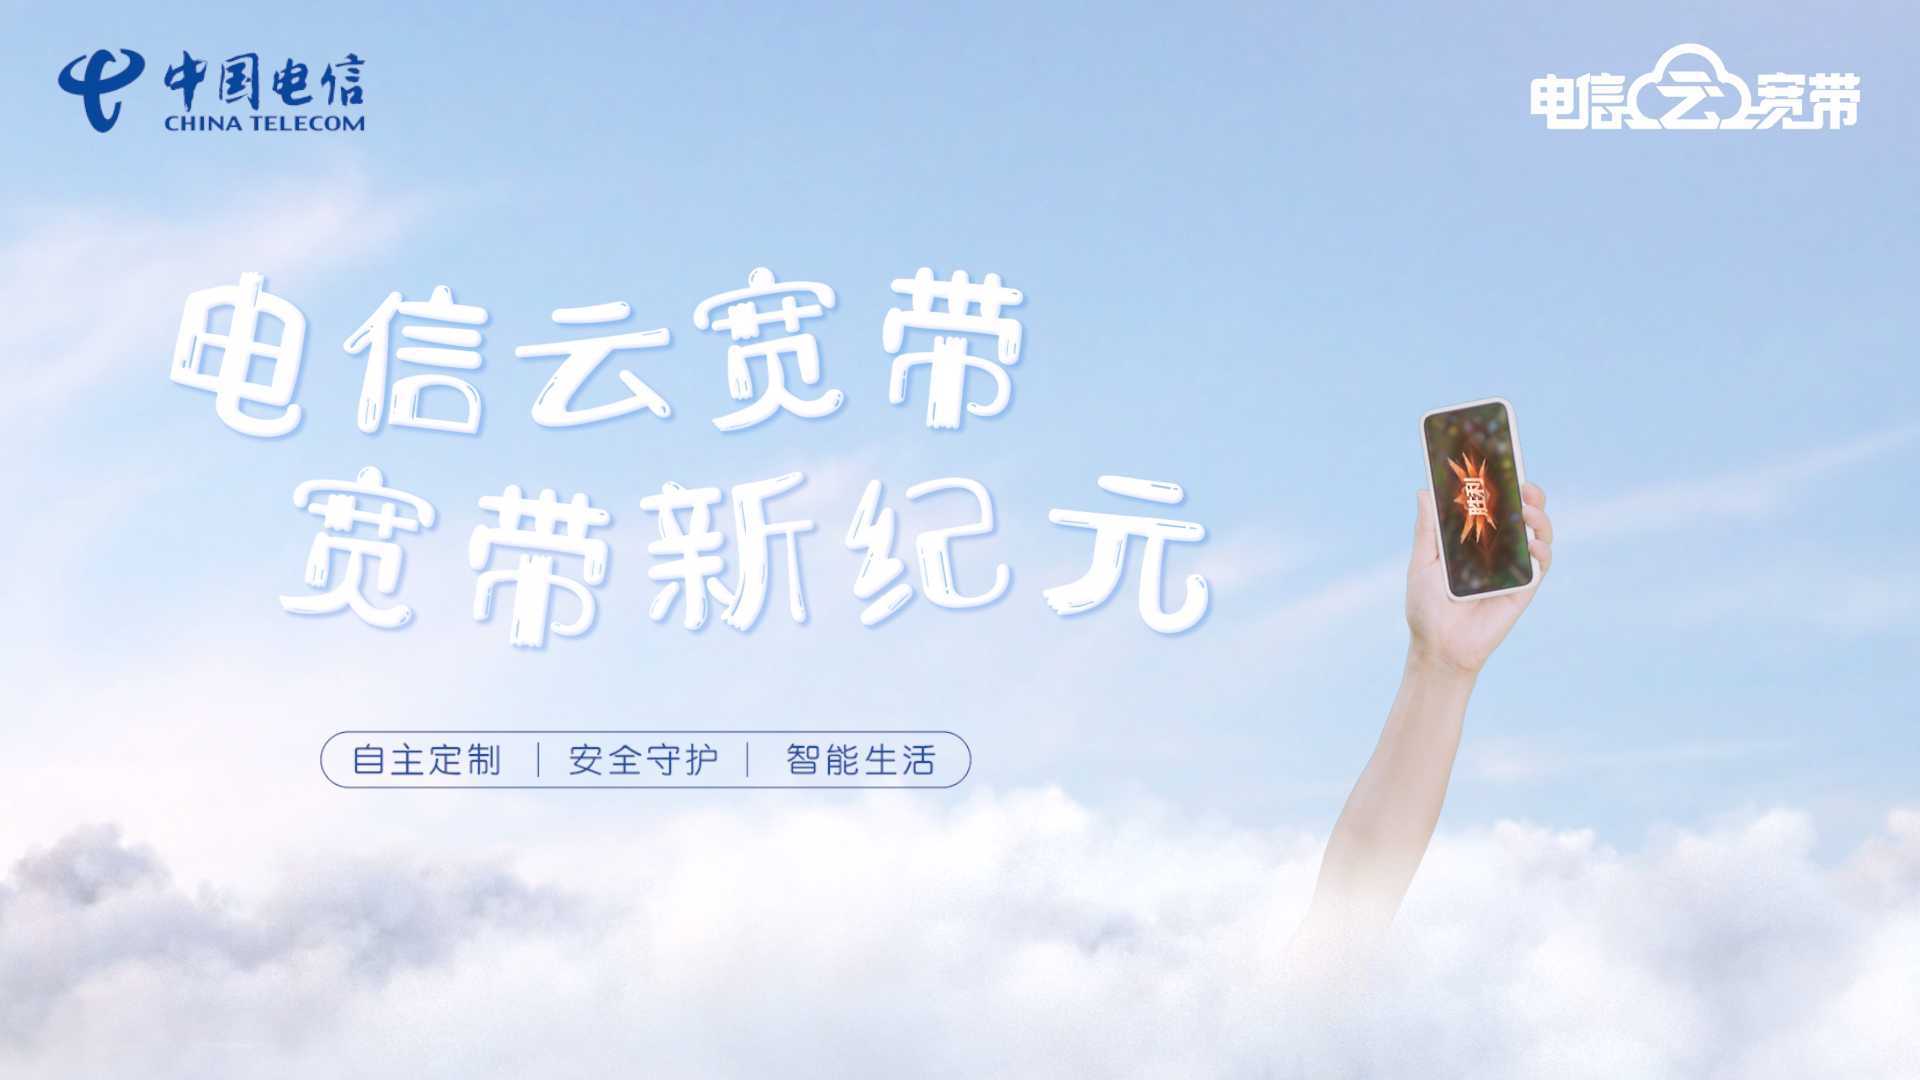 上海电信云宽带创意视频